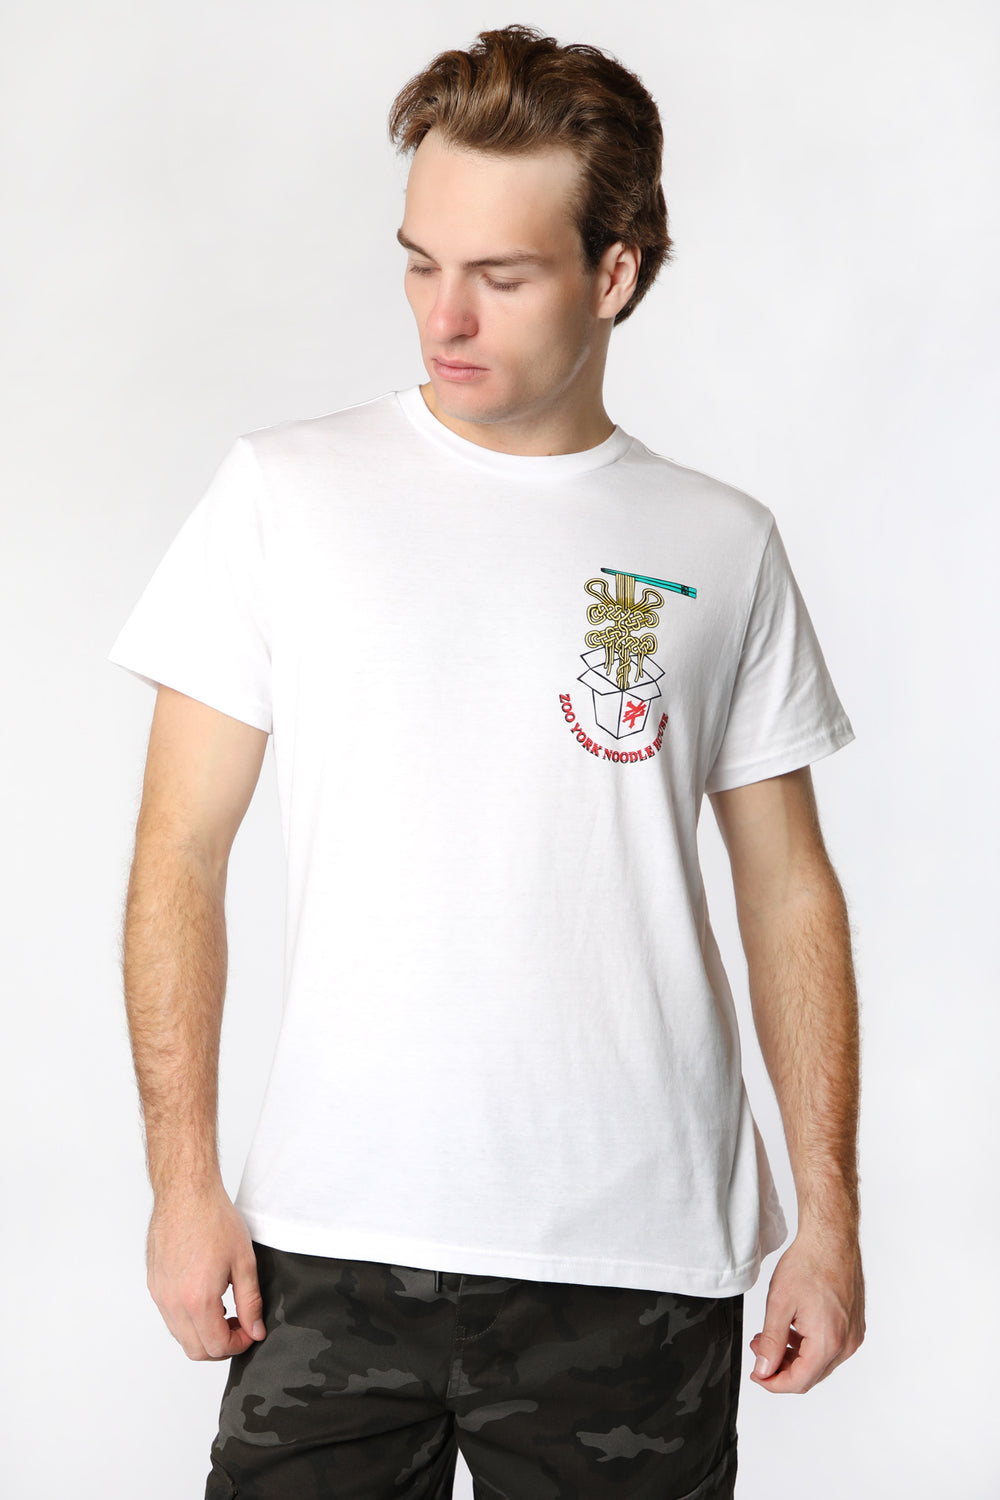 T-Shirt Imprimé Nouilles à Emporter Zoo York Homme T-Shirt Imprimé Nouilles à Emporter Zoo York Homme